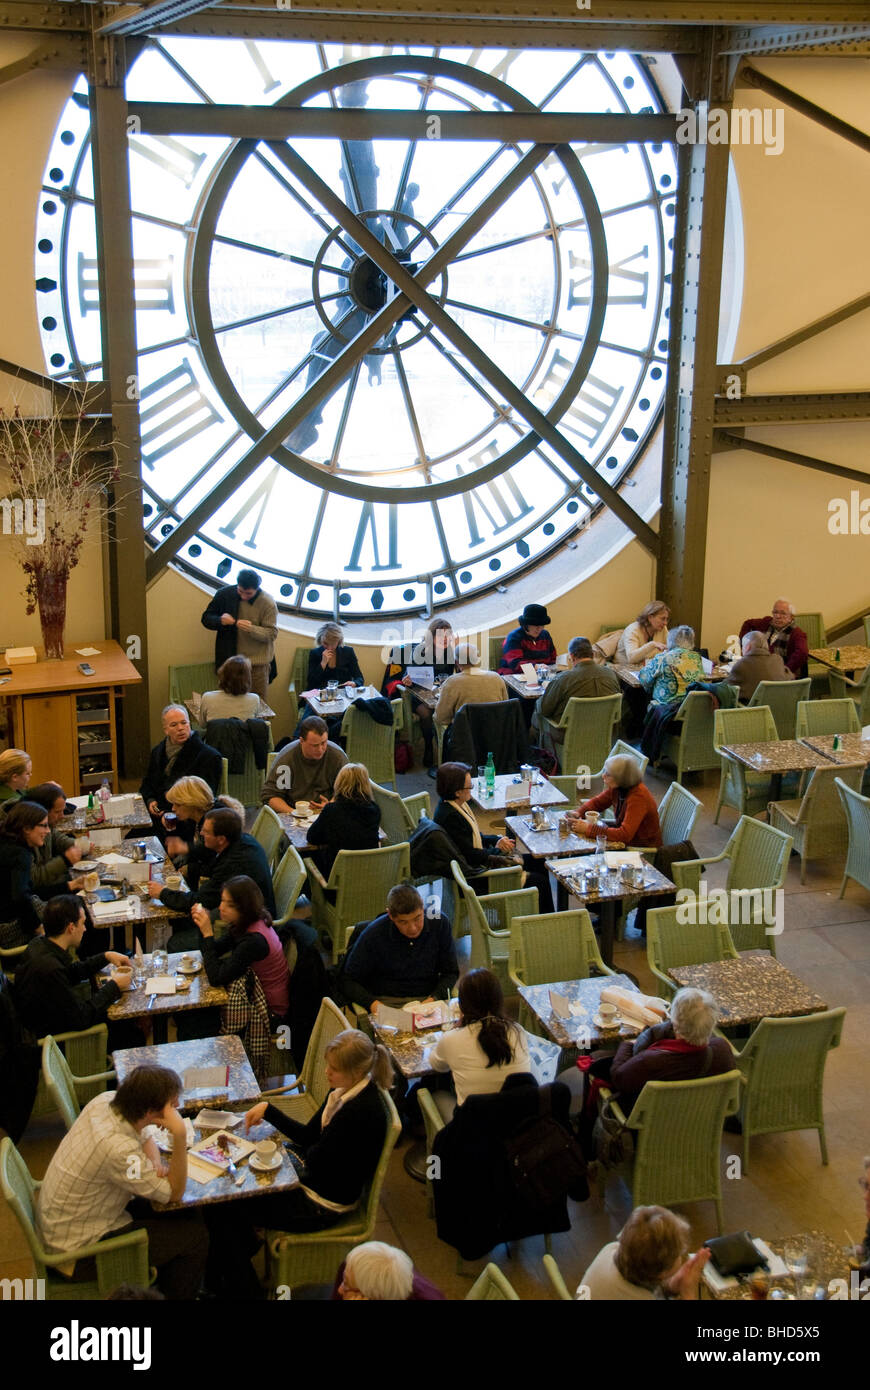 Paris, Frankreich, Große Menschenmengen, Gemeinsame Mahlzeiten, Getränke, Hochwinkel, französische Denkmäler, Kunstmuseum, Musée d'Orsay, Café de l'Horloge Übersicht, riesige numerische Uhr Stockfoto